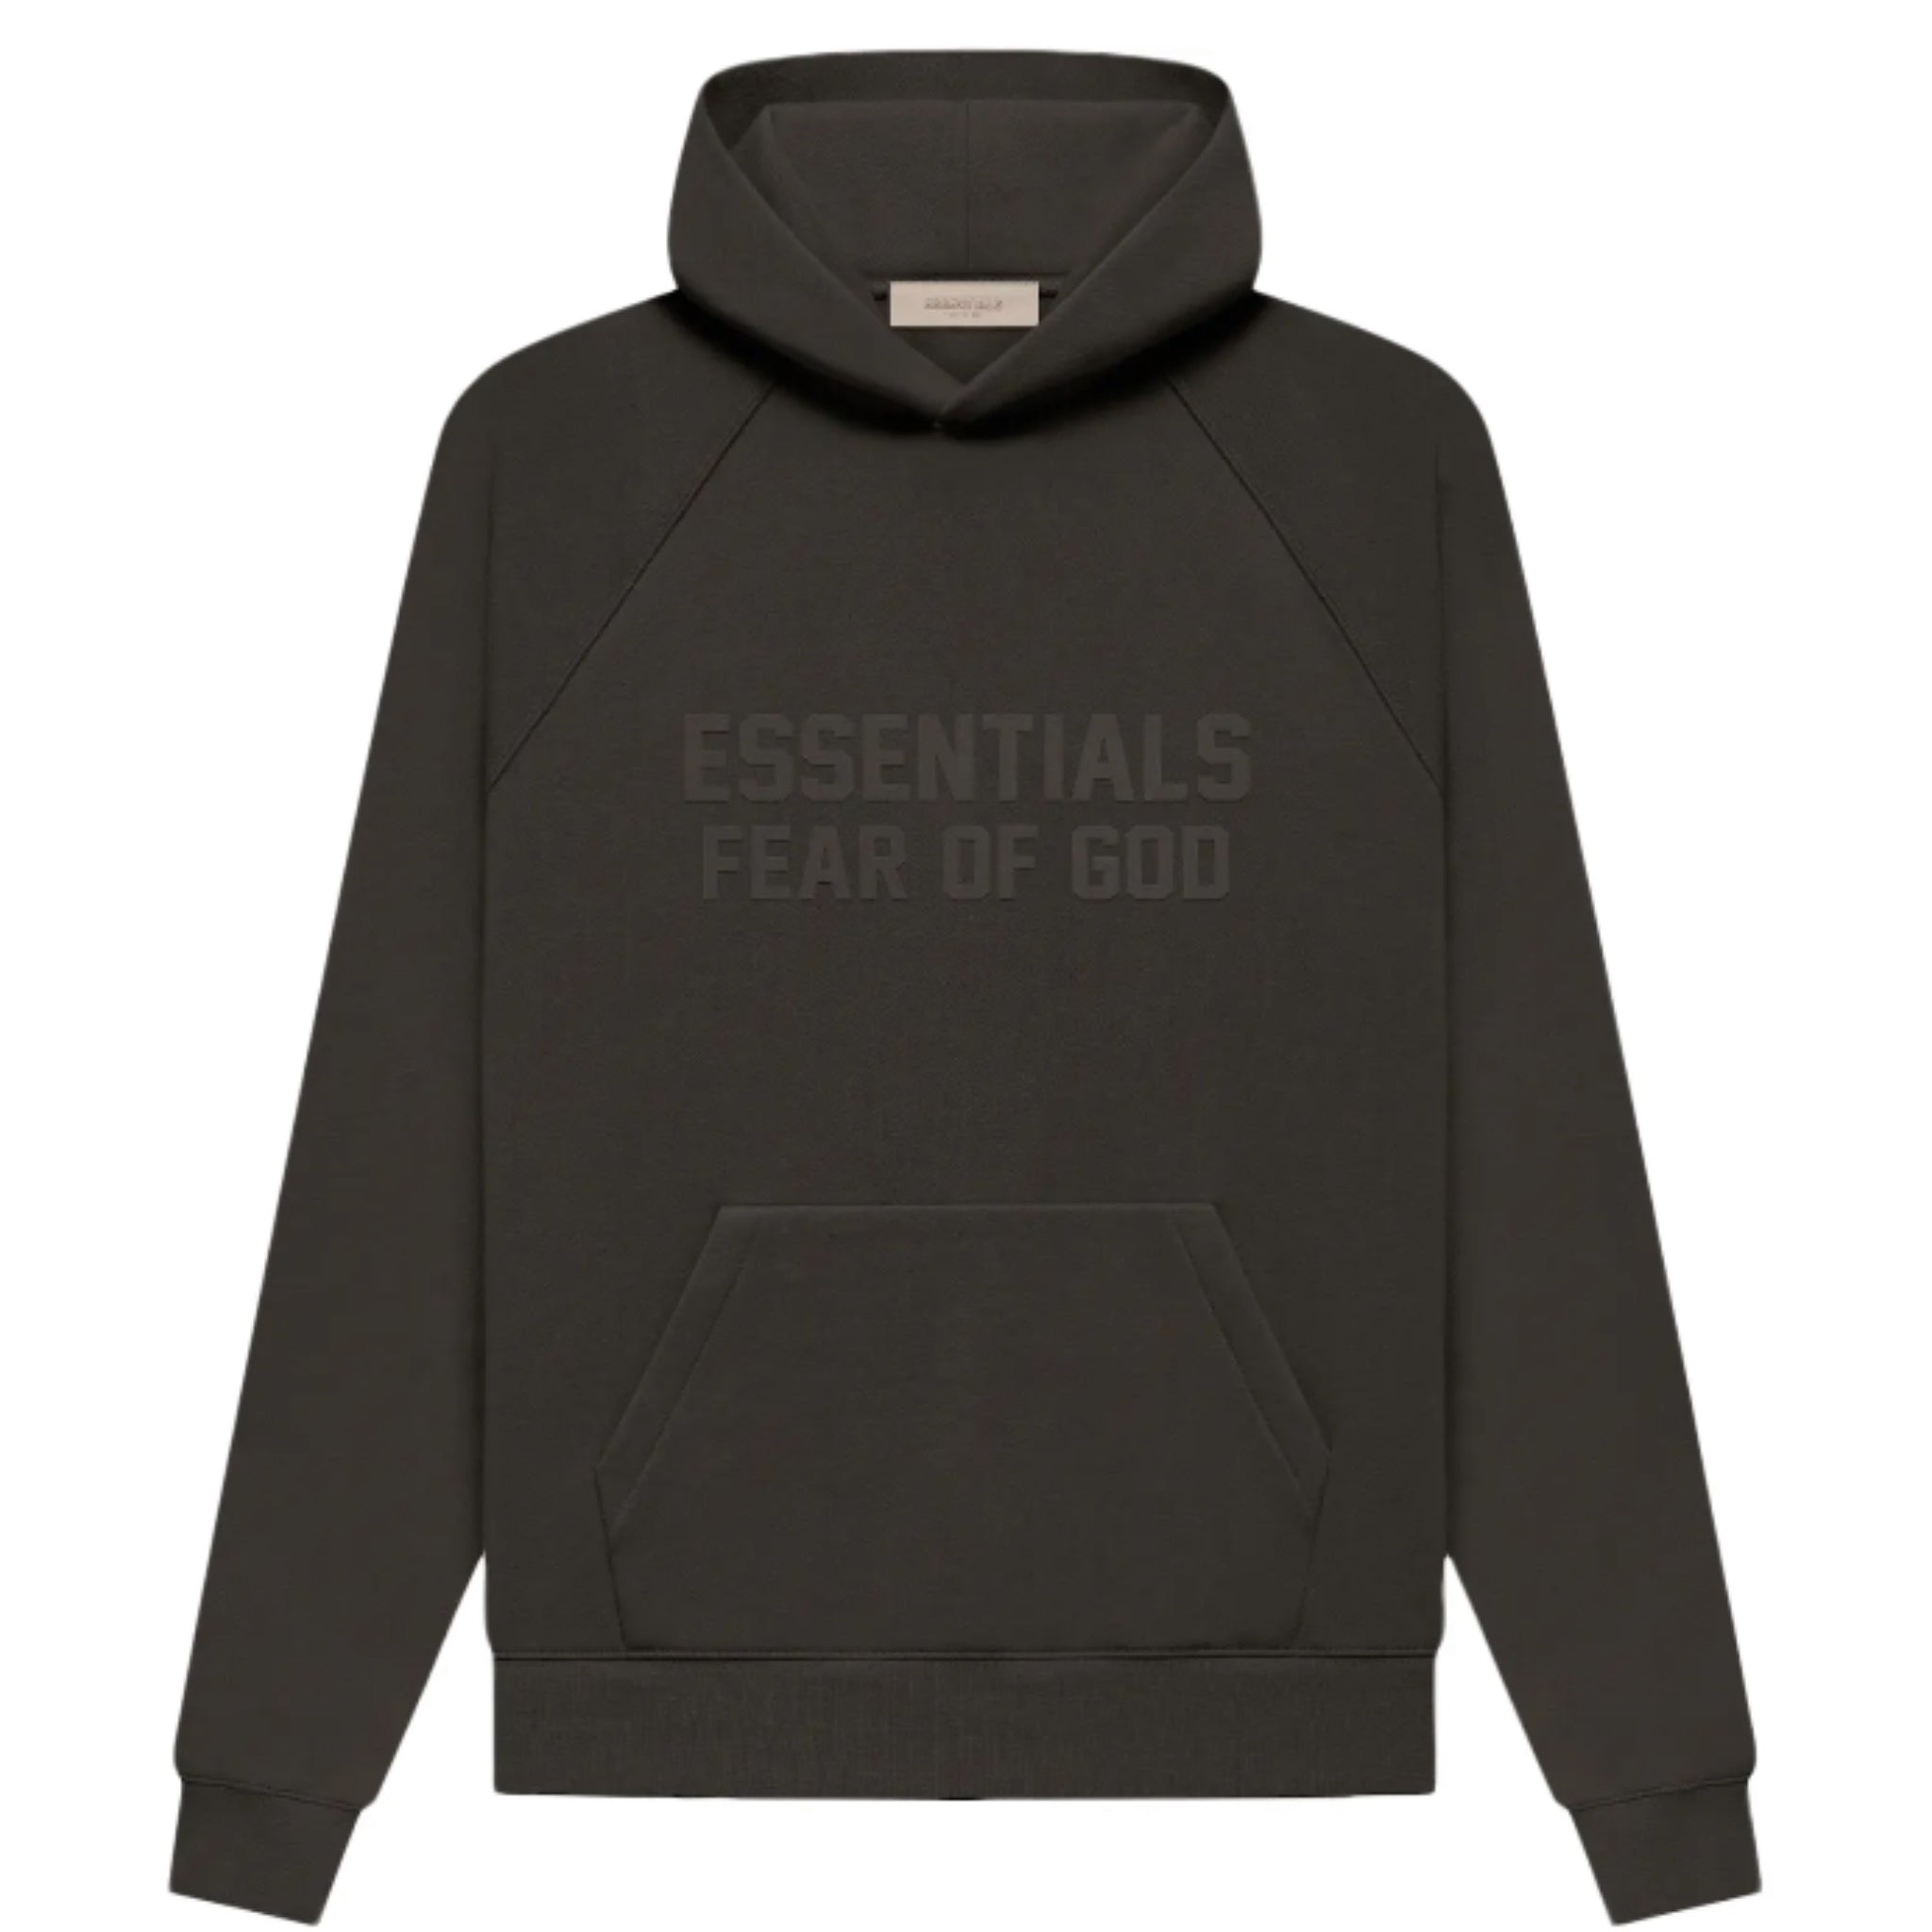 Fear of God Essentials Off Black Hoodie - Black Hooded Sweatshirt